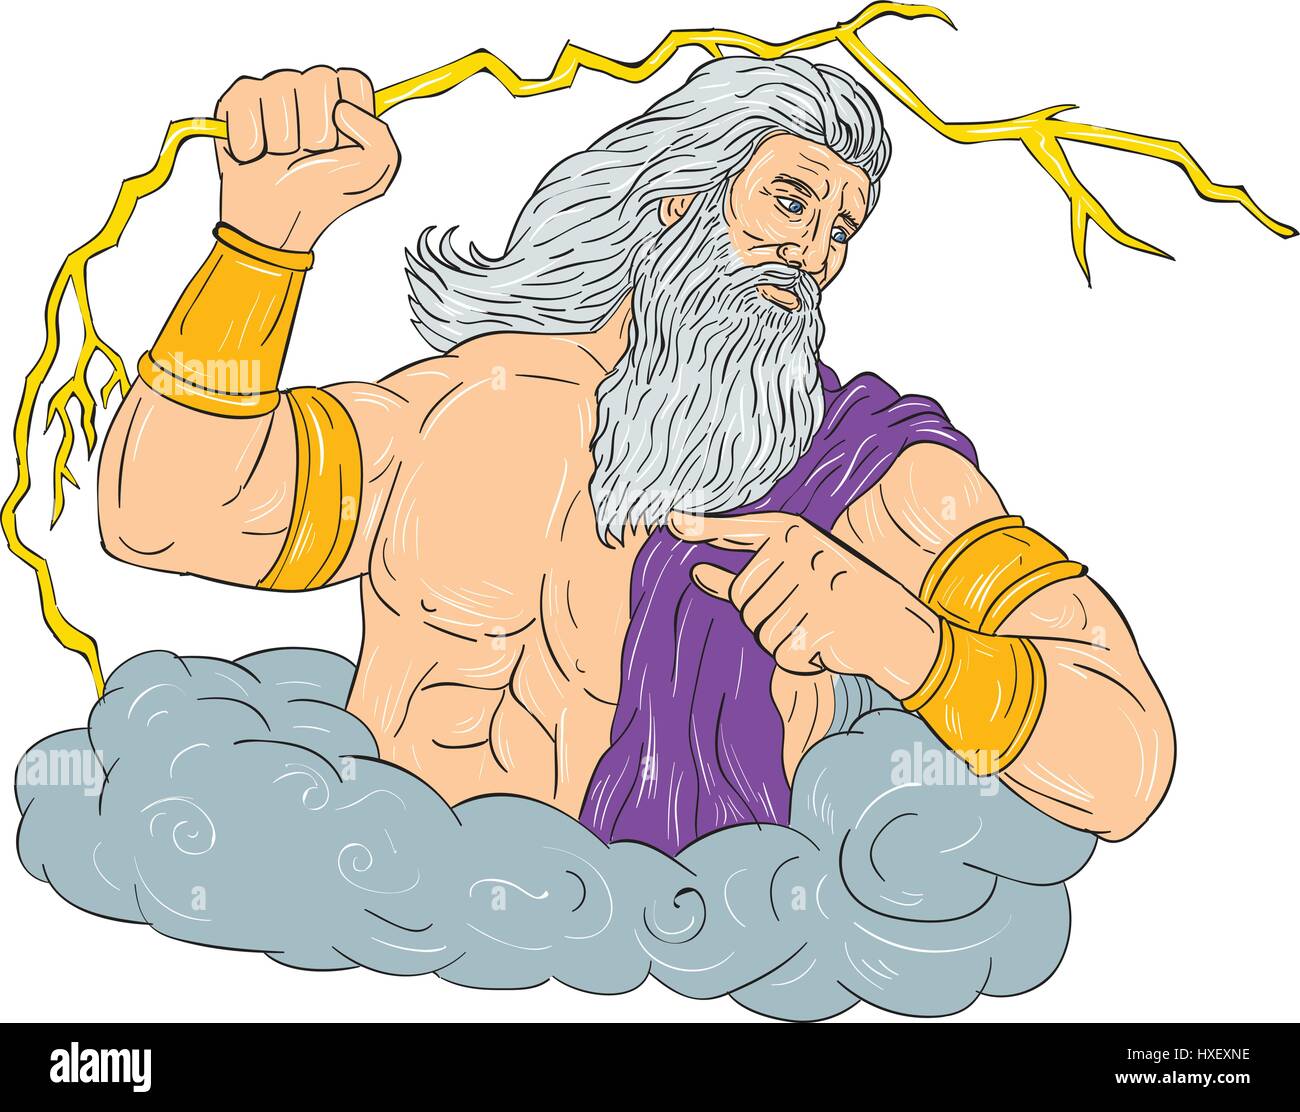 Croquis dessin illustration style de Zeus, le dieu grec du ciel et maître des dieux de l'Olympe brandissant tenant un foudre thunderbolt à la recherche Illustration de Vecteur